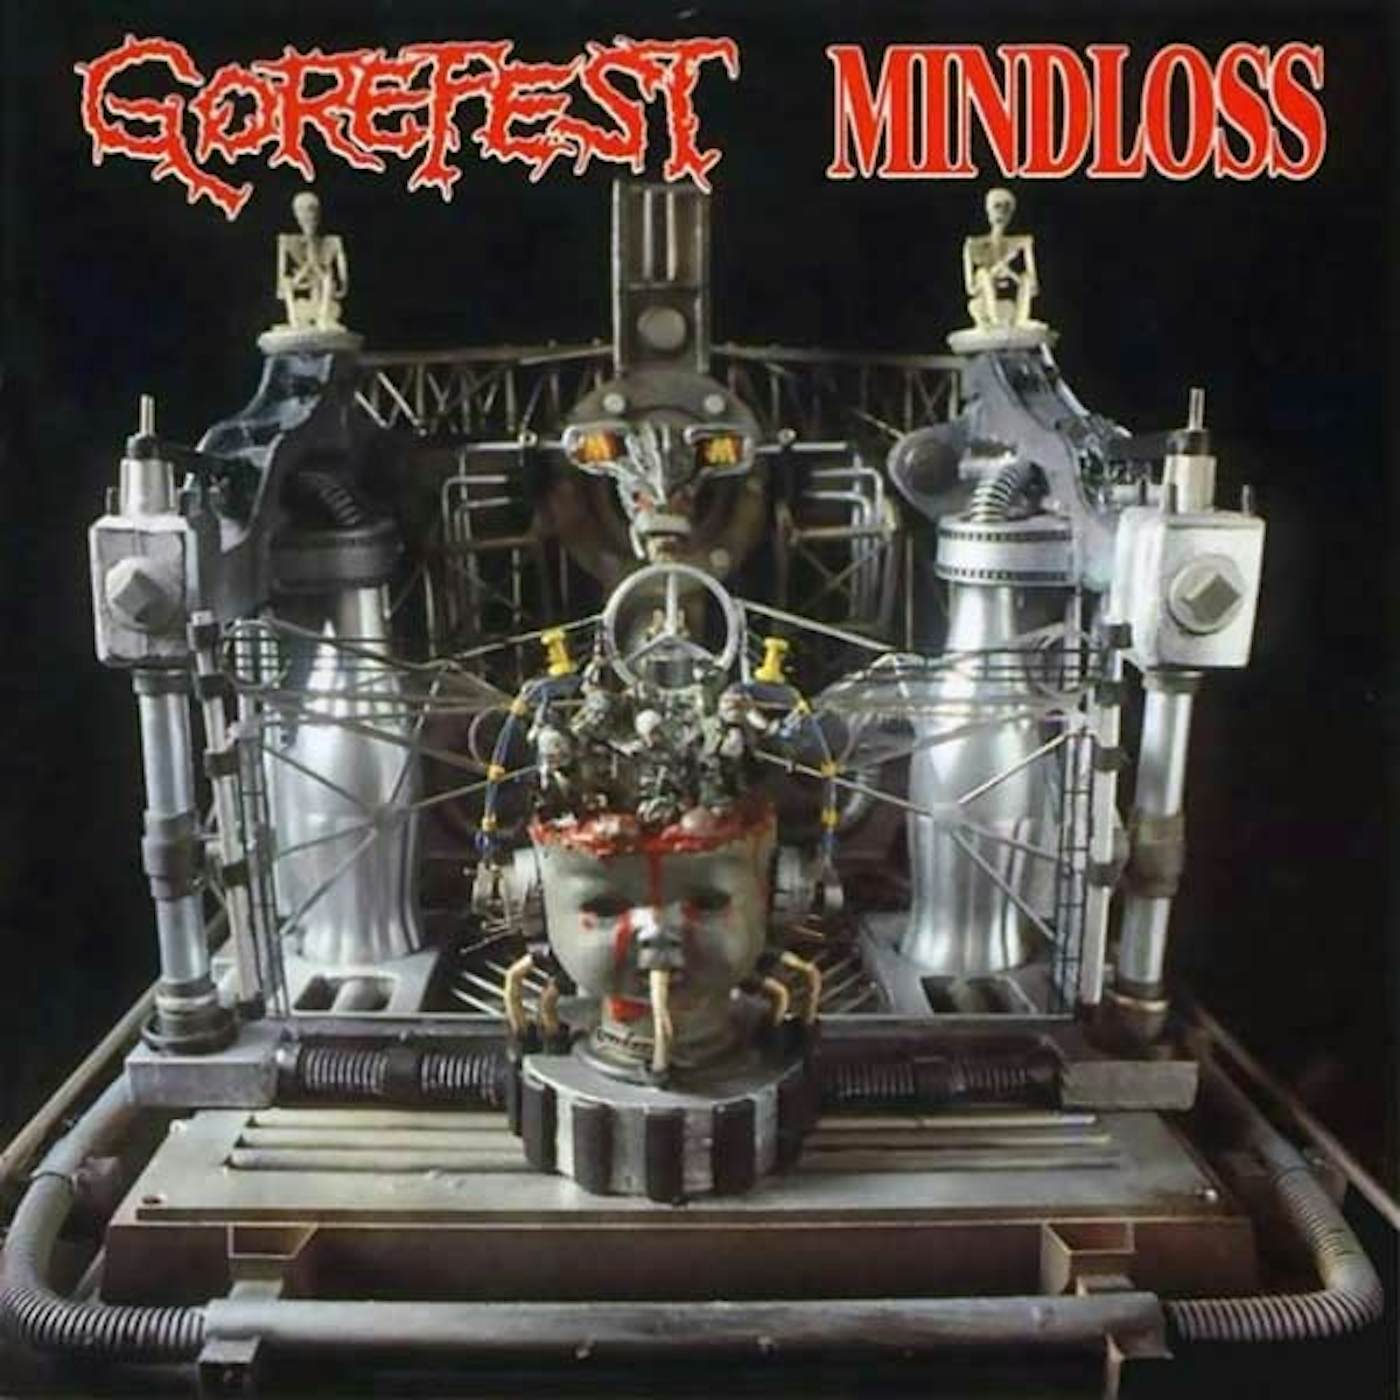 Gorefest MINDLOSS & DEMOS Vinyl Record